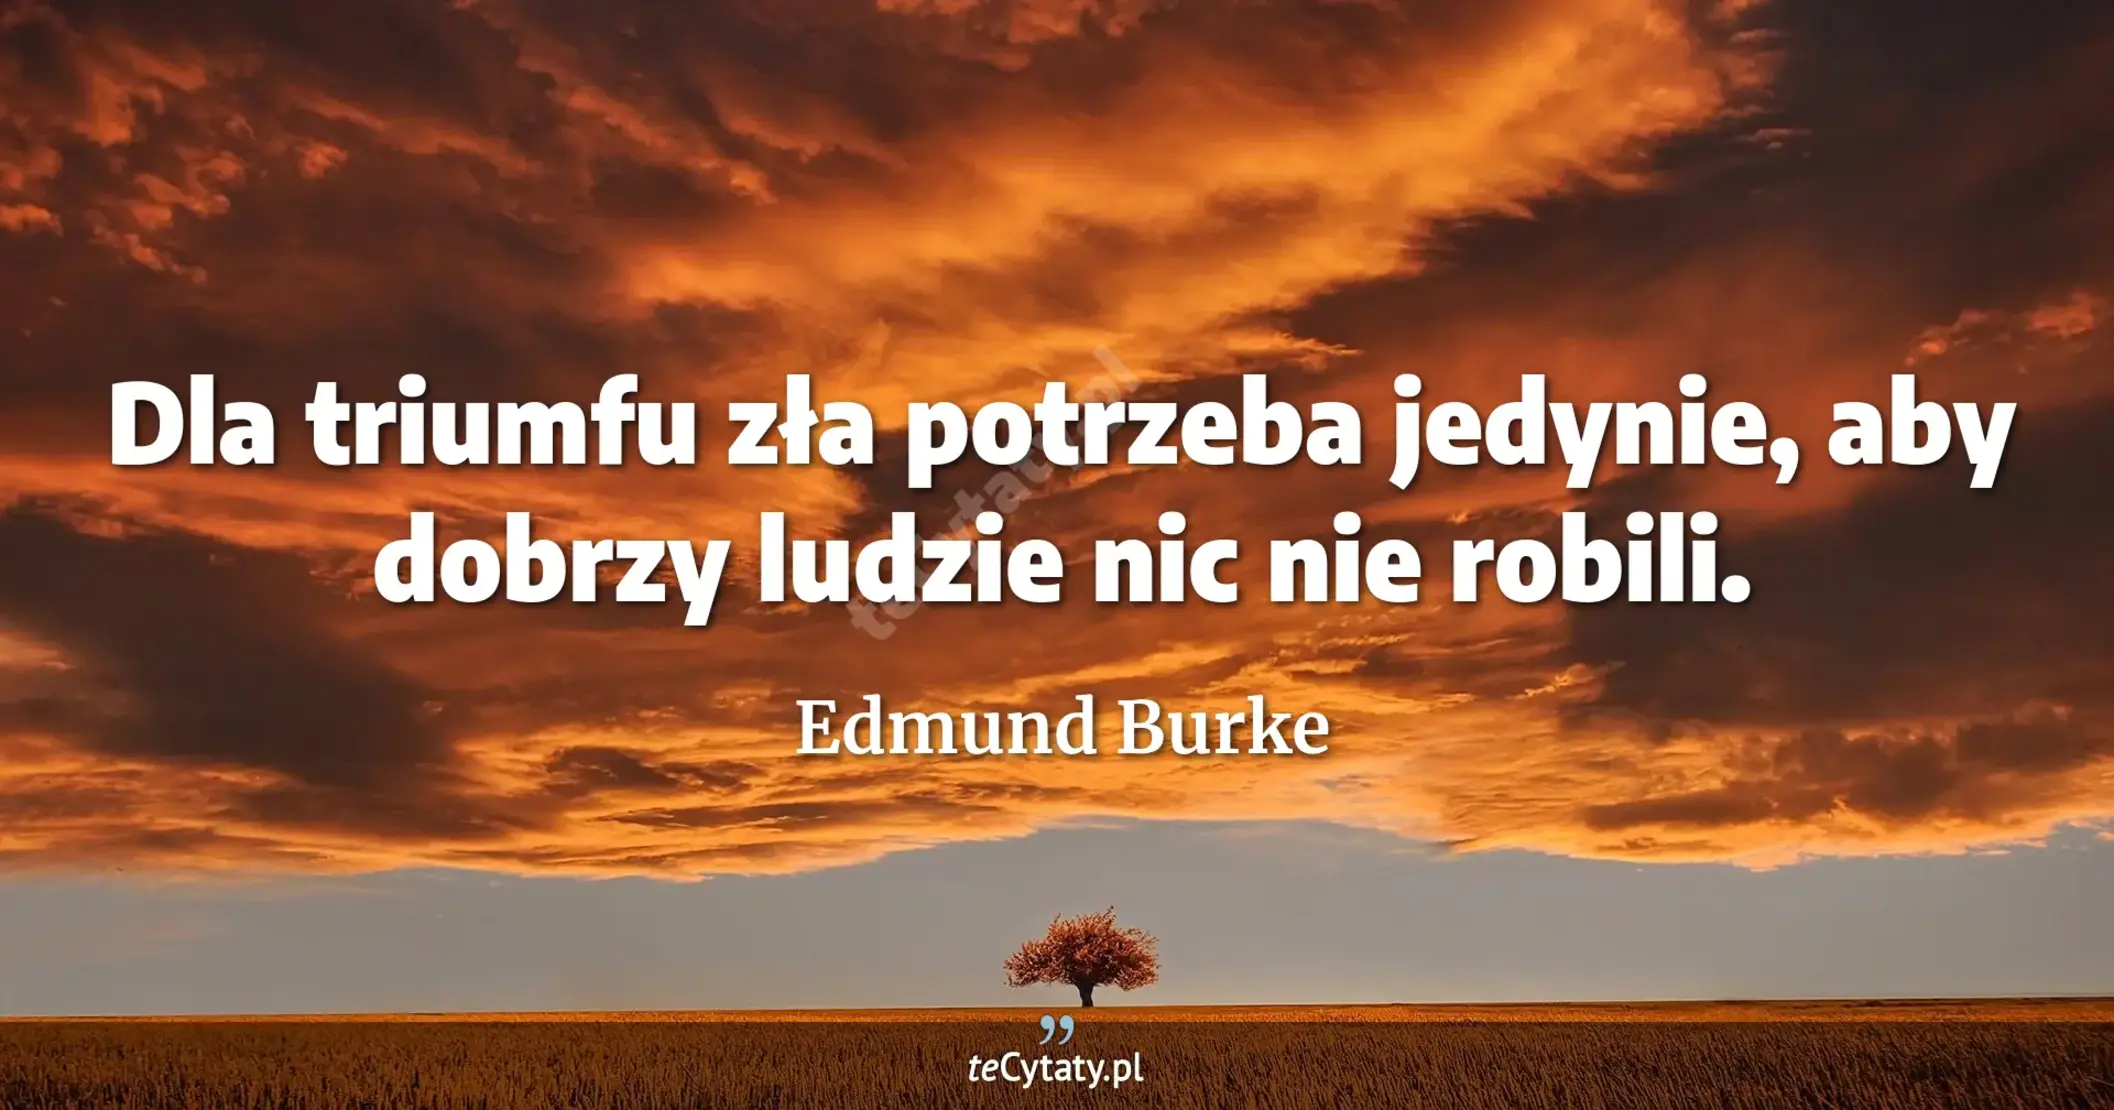 Dla triumfu zła potrzeba jedynie, aby dobrzy ludzie nic nie robili. - Edmund Burke